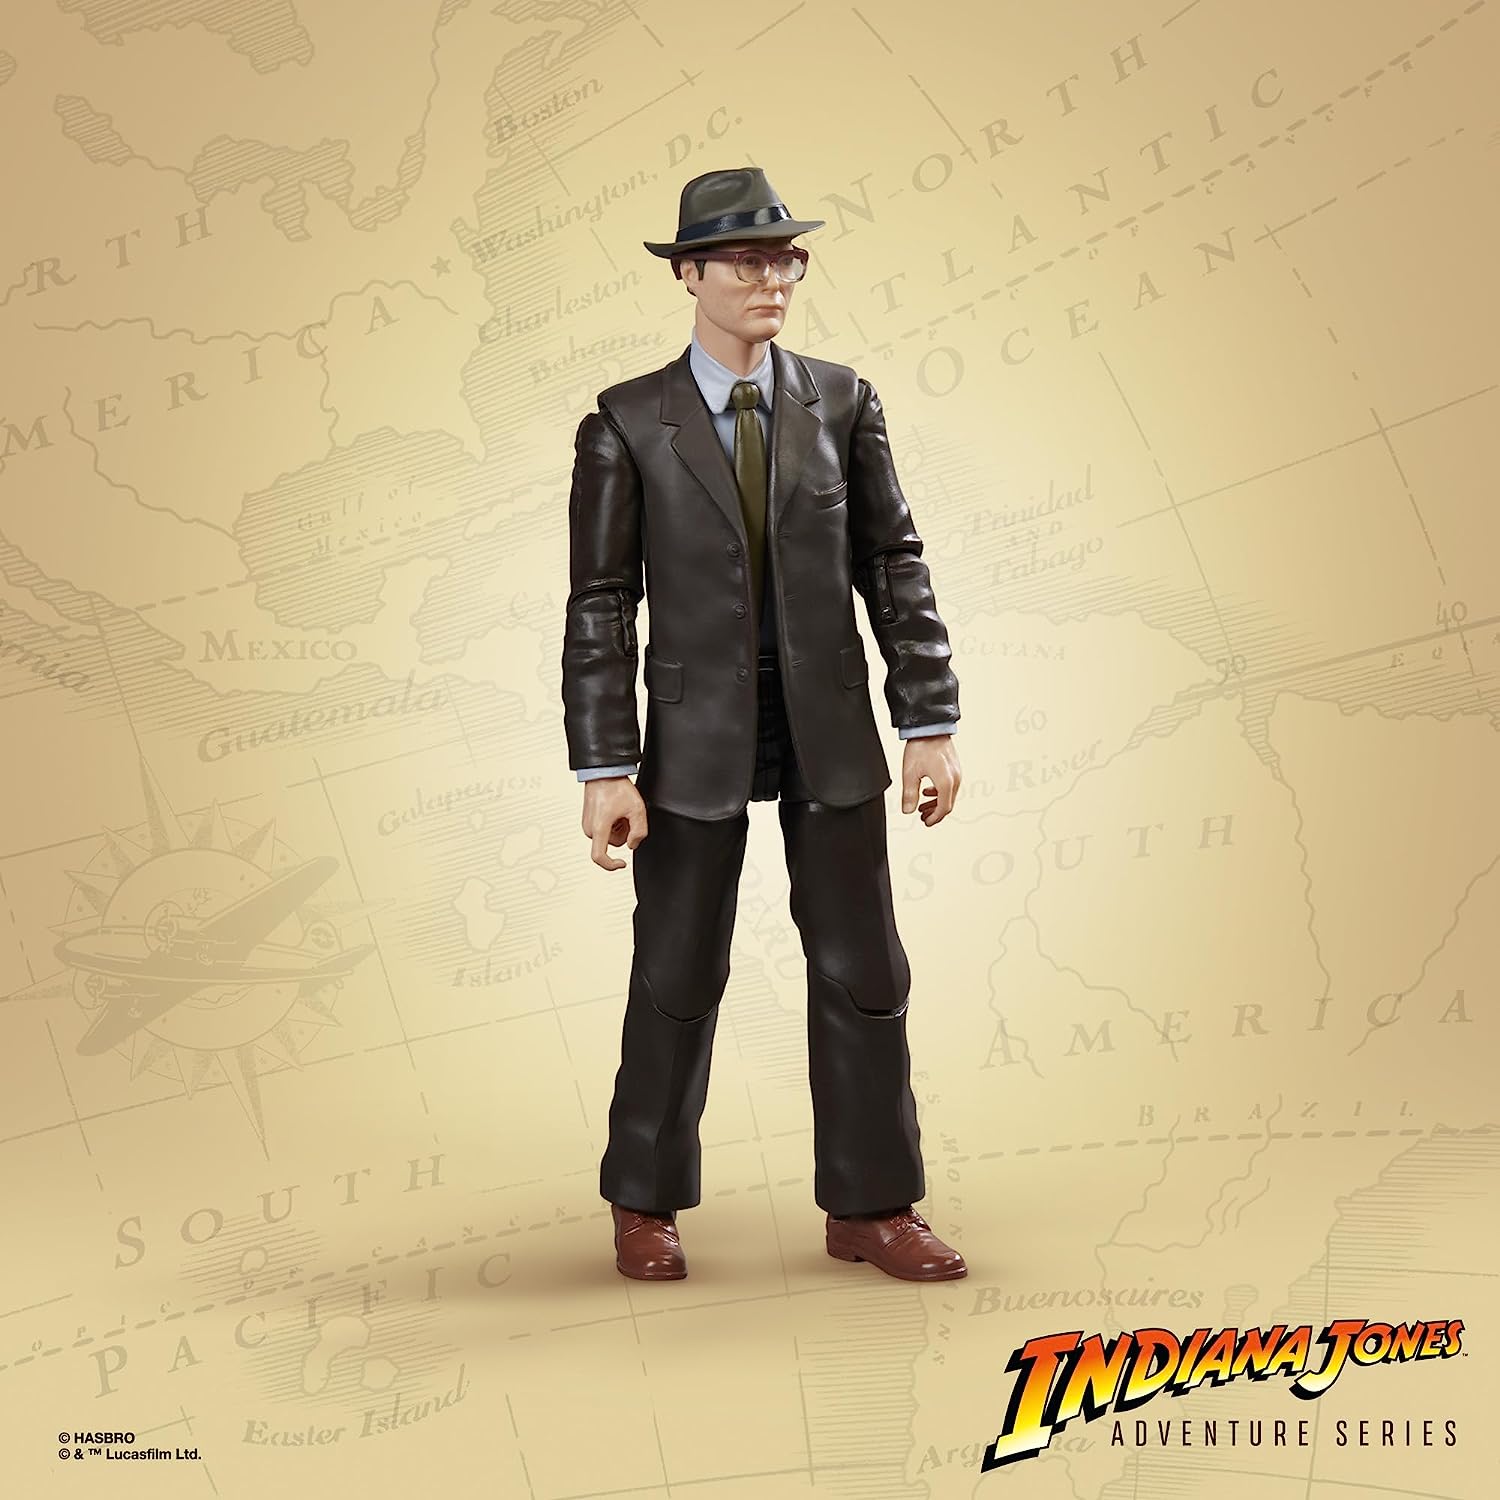 Indiana Jones Adventure Series Doctor Jürgen Voller(Dial of Destiny) 6-Inch Action Figure 正規品画像